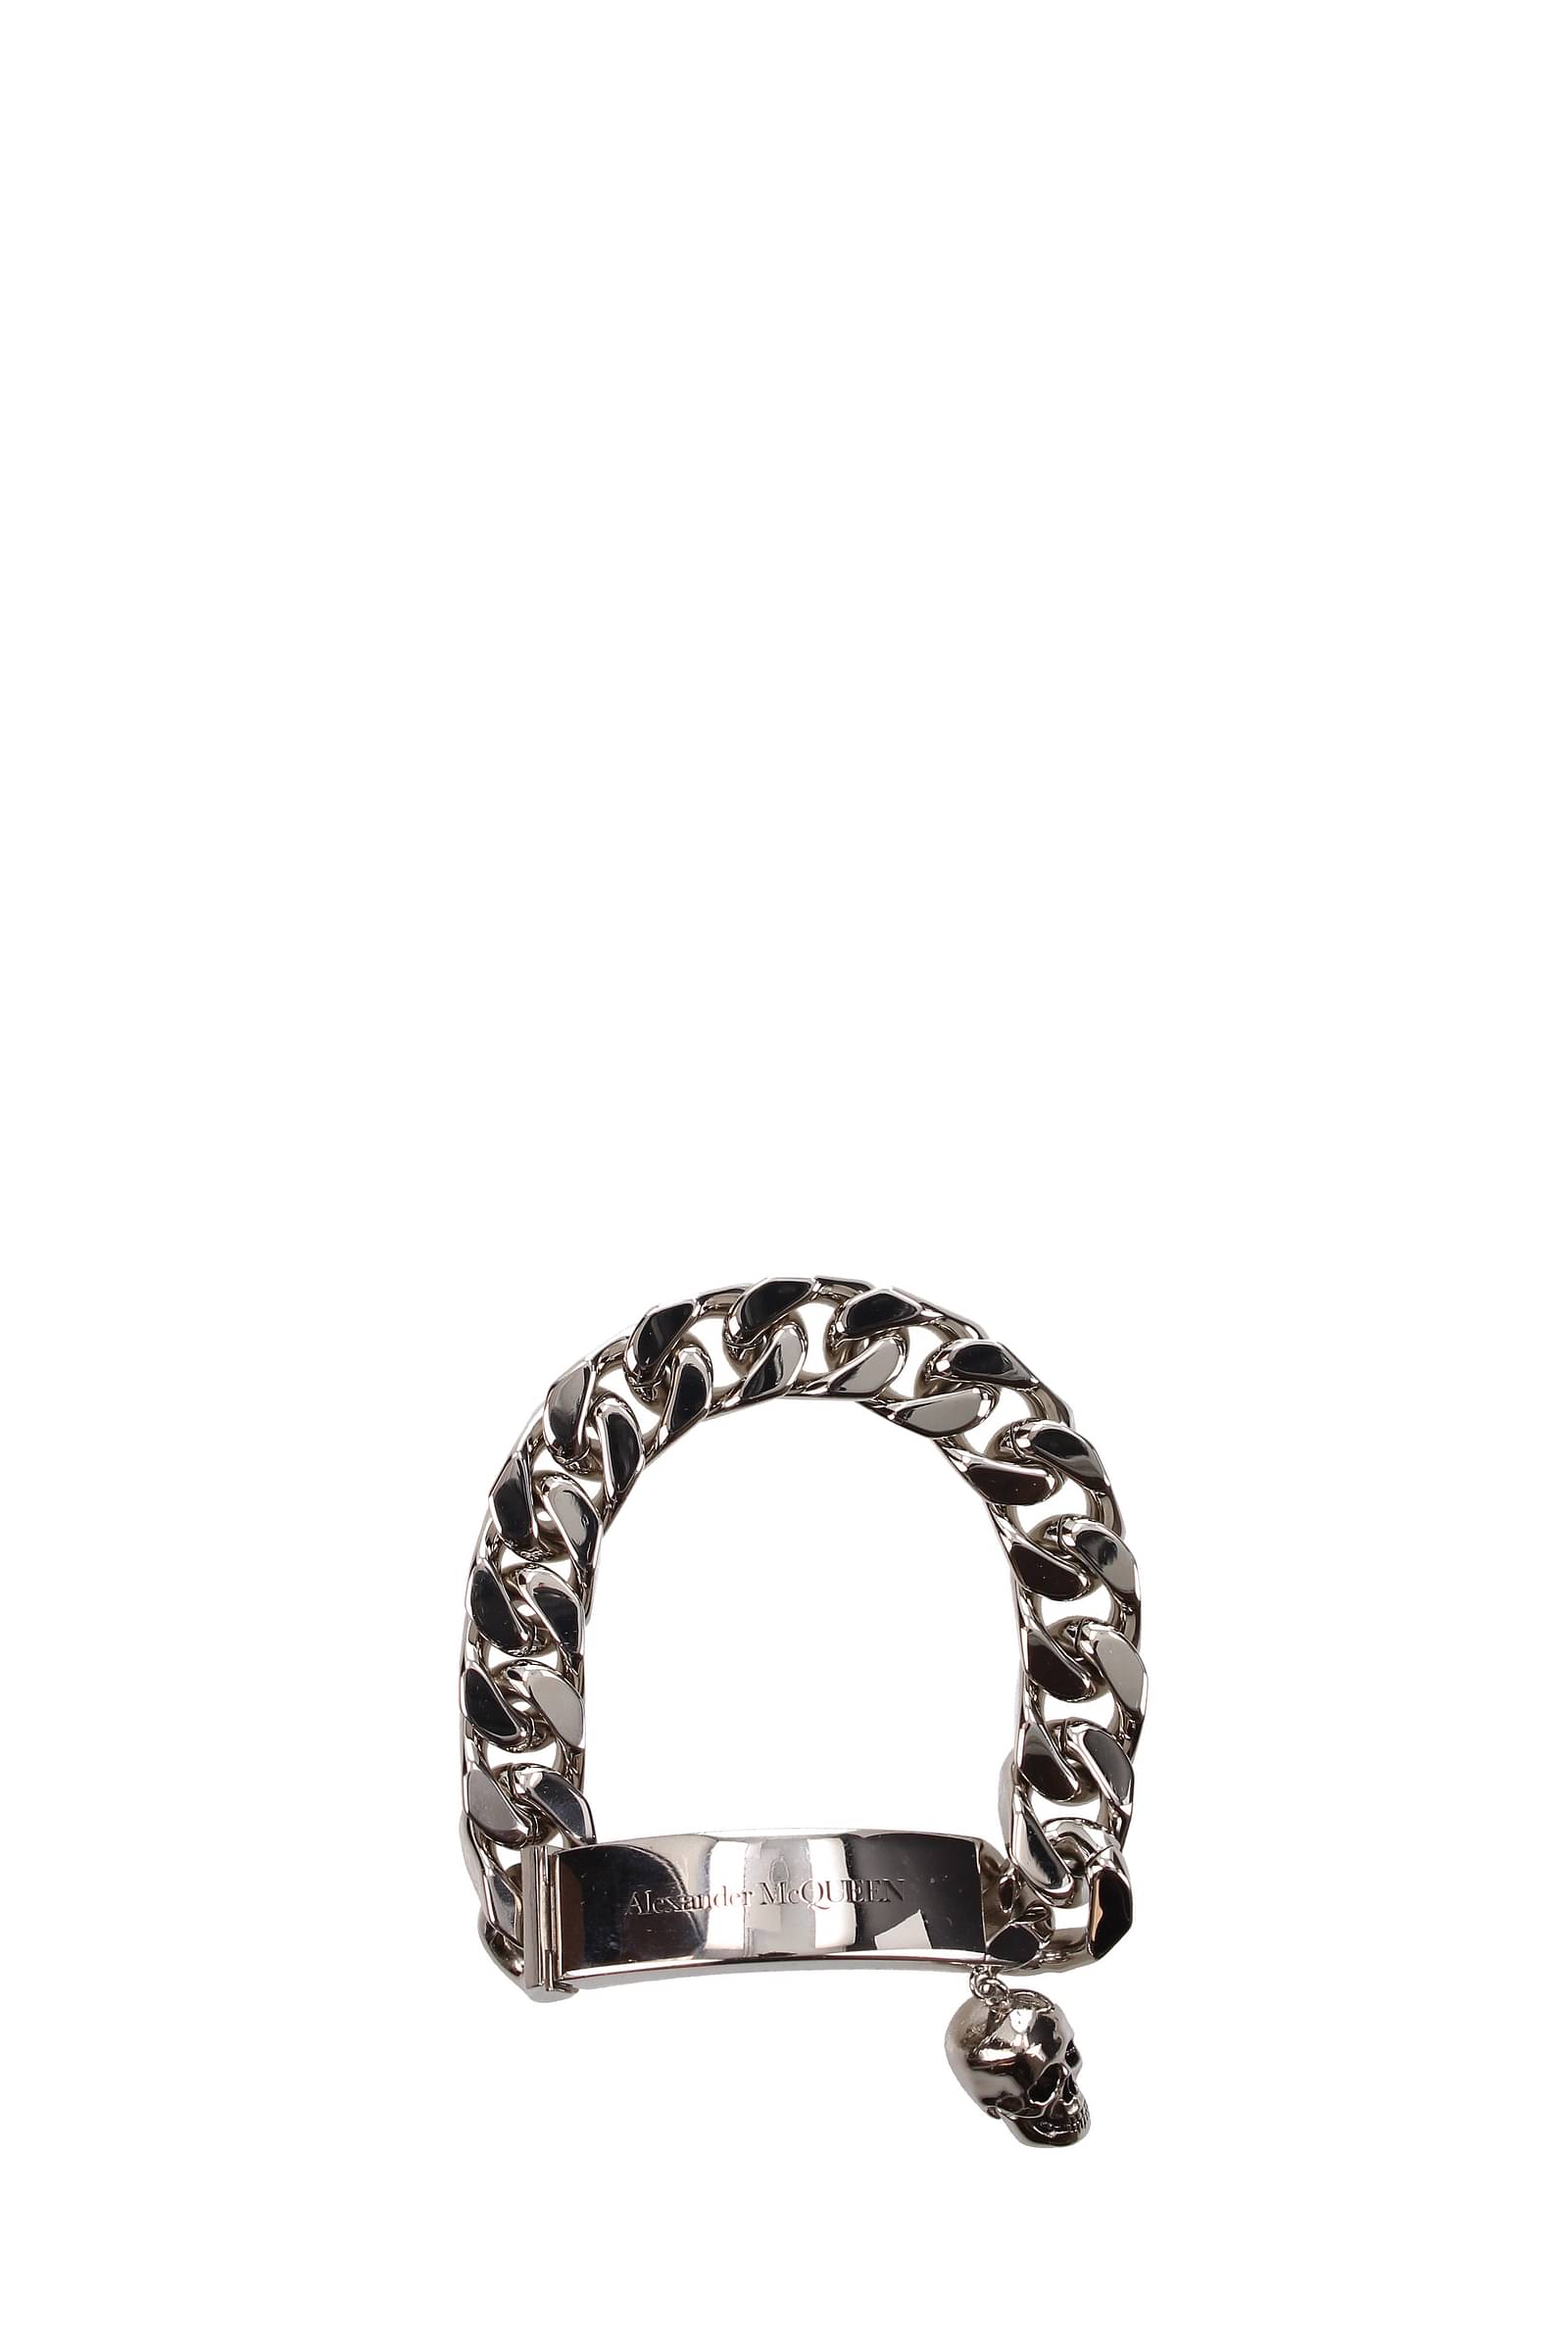 Alexander McQueen – The Chain Medallion Bracelet